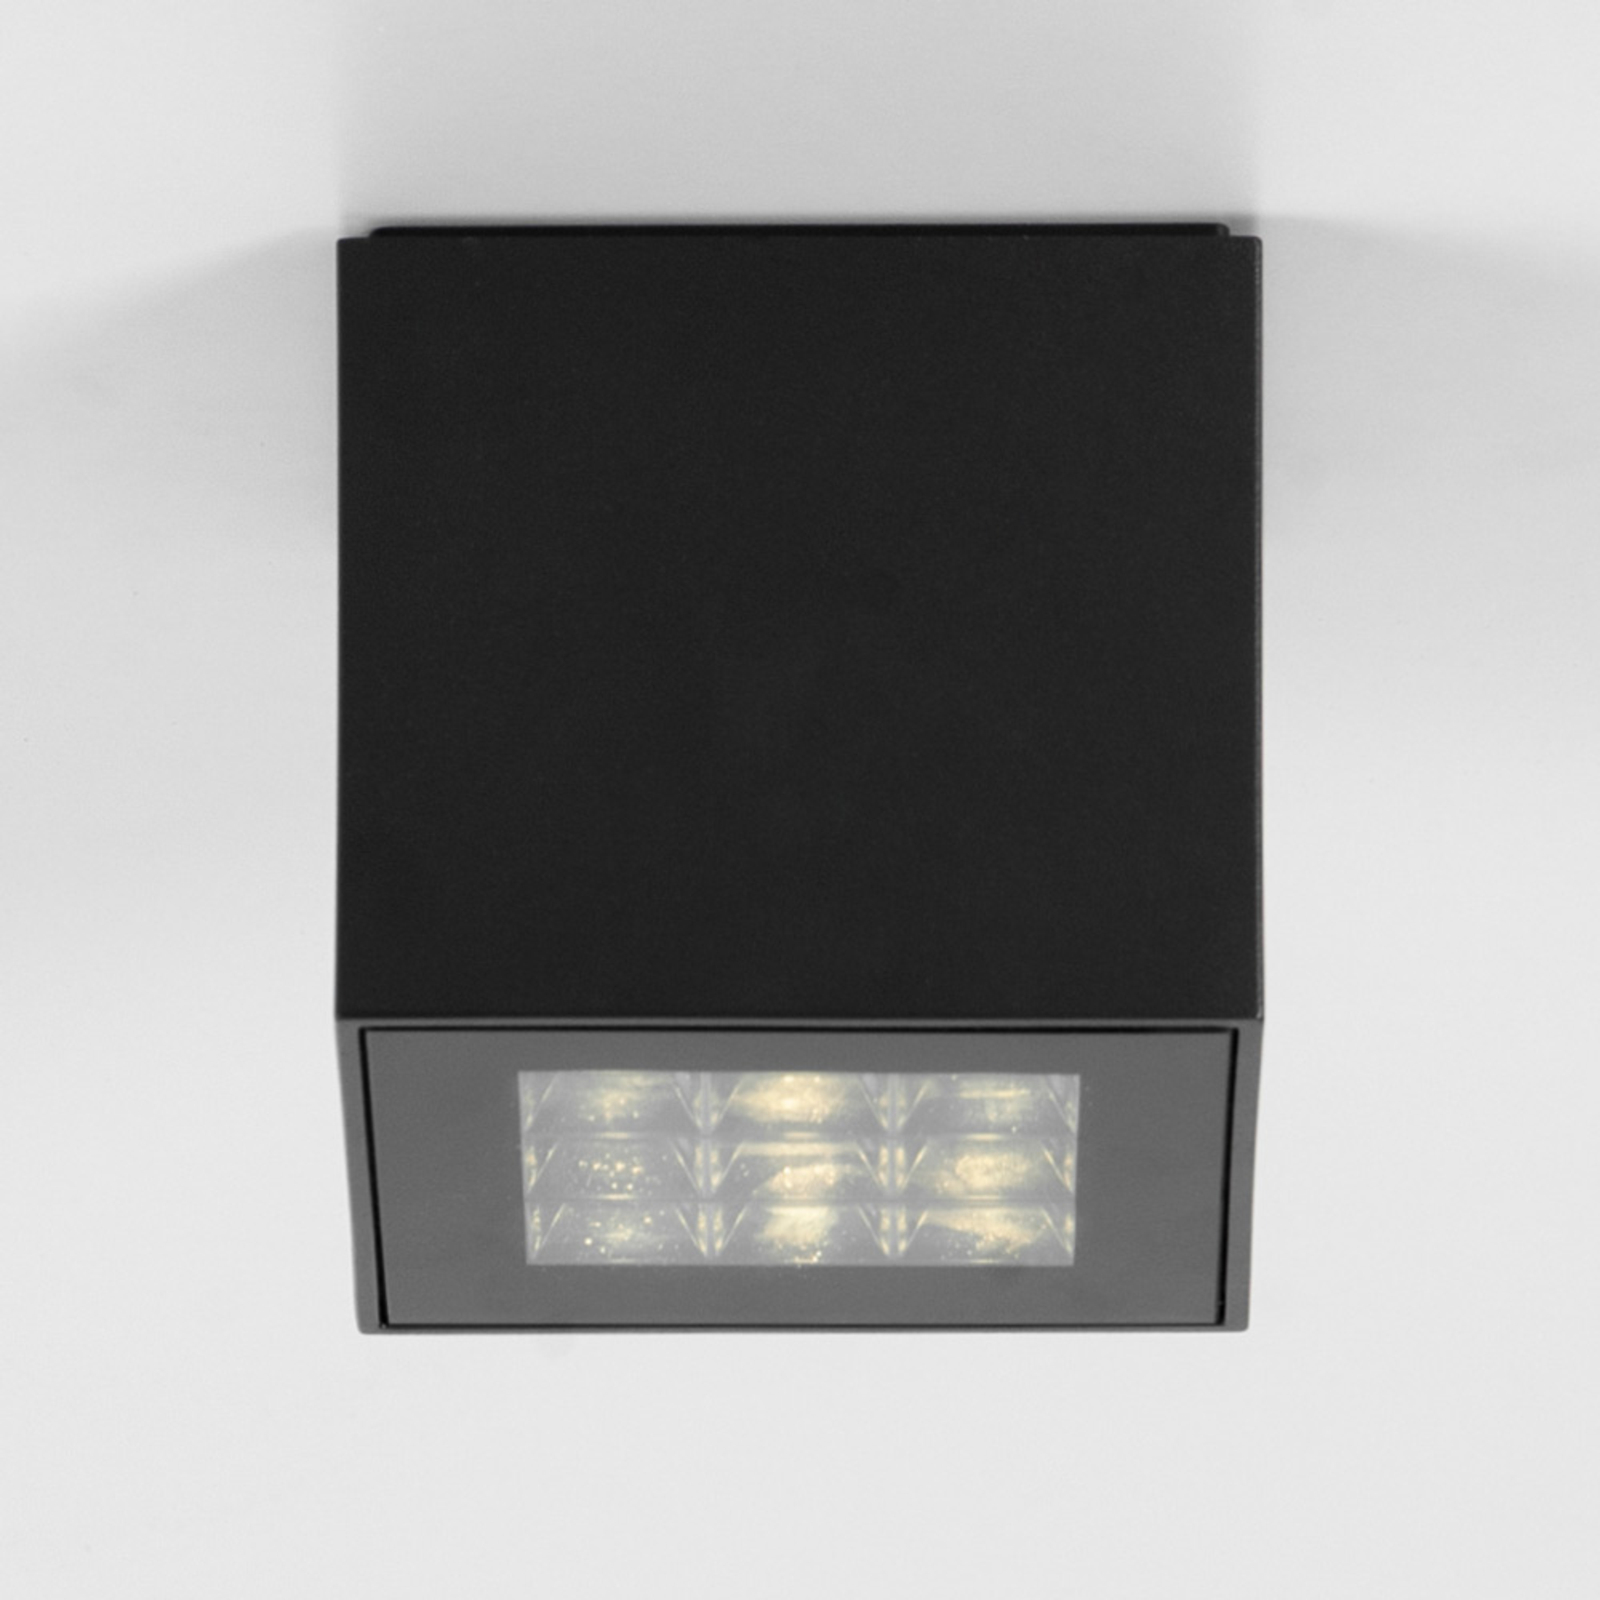 BRUMBERG Blokk plafonnier LED, 11 x 11 cm